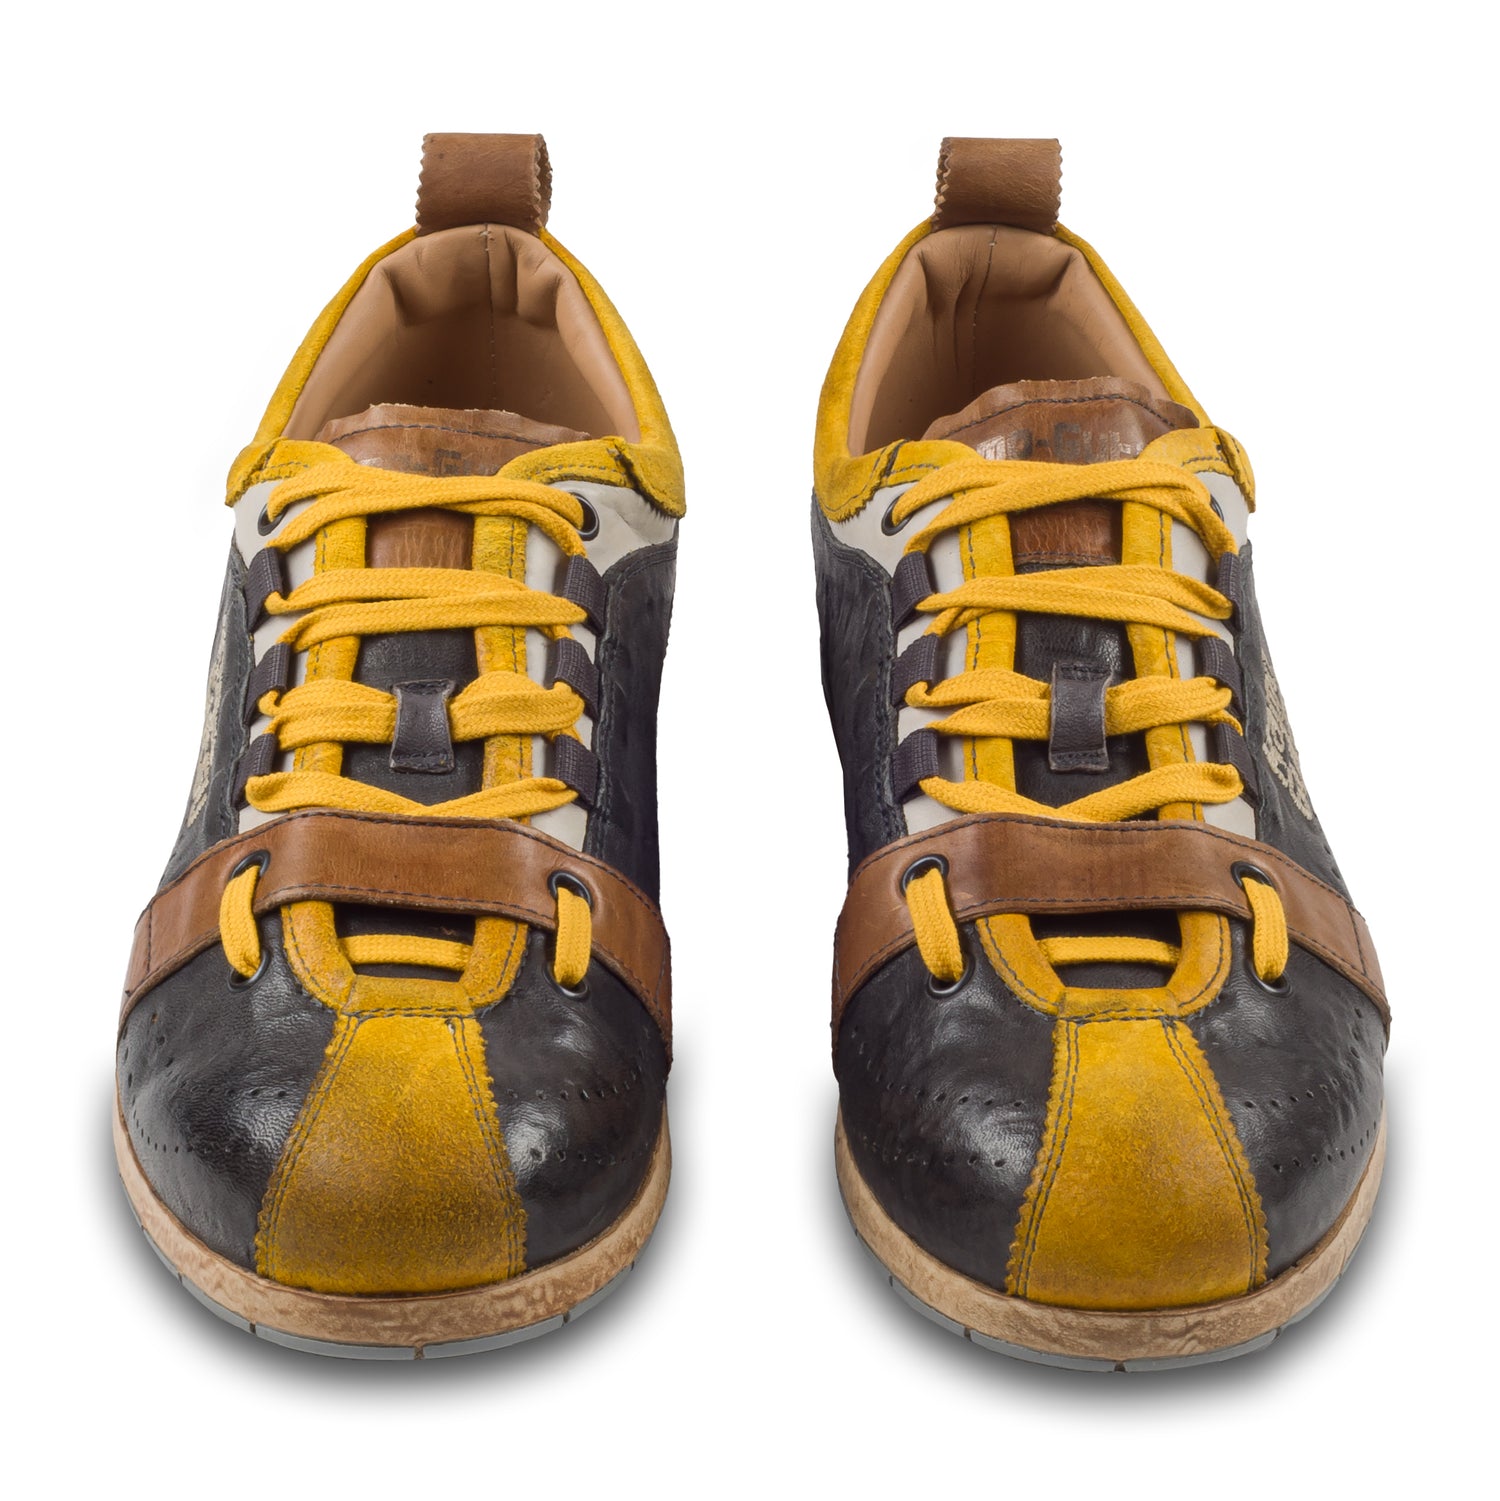 KAMO-GUTSU Italienischer Herren Leder Sneaker, dunkelgrau gelb, Retro-Optik, Modell TIFO-017 lambo antracite. Handgefertigt. Paarweise Ansicht von vorne.